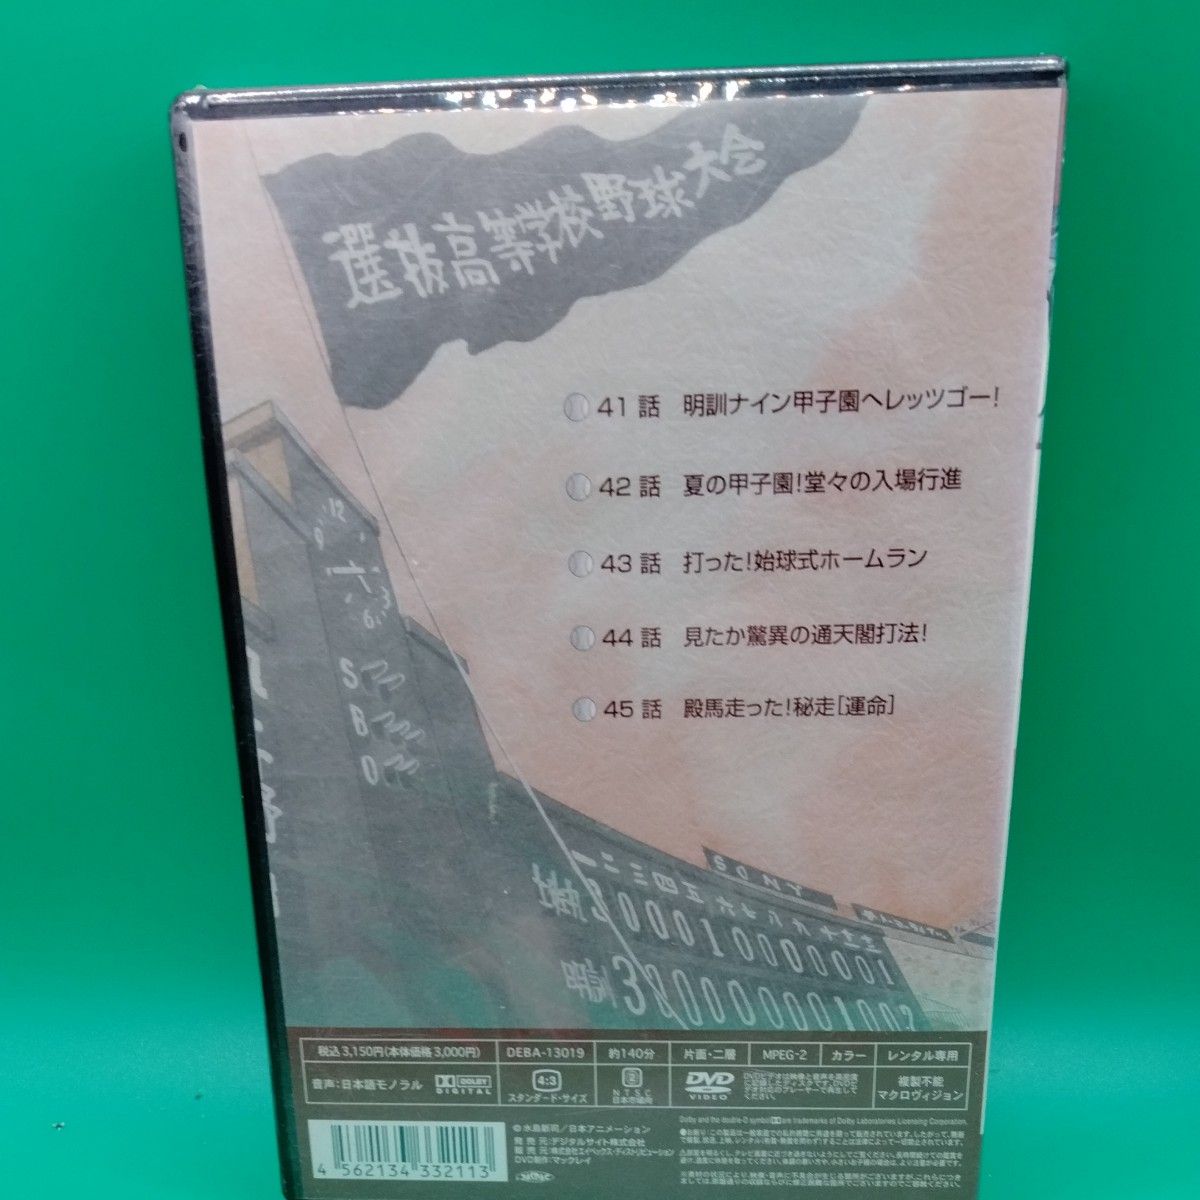 ドカベン 9 DVD